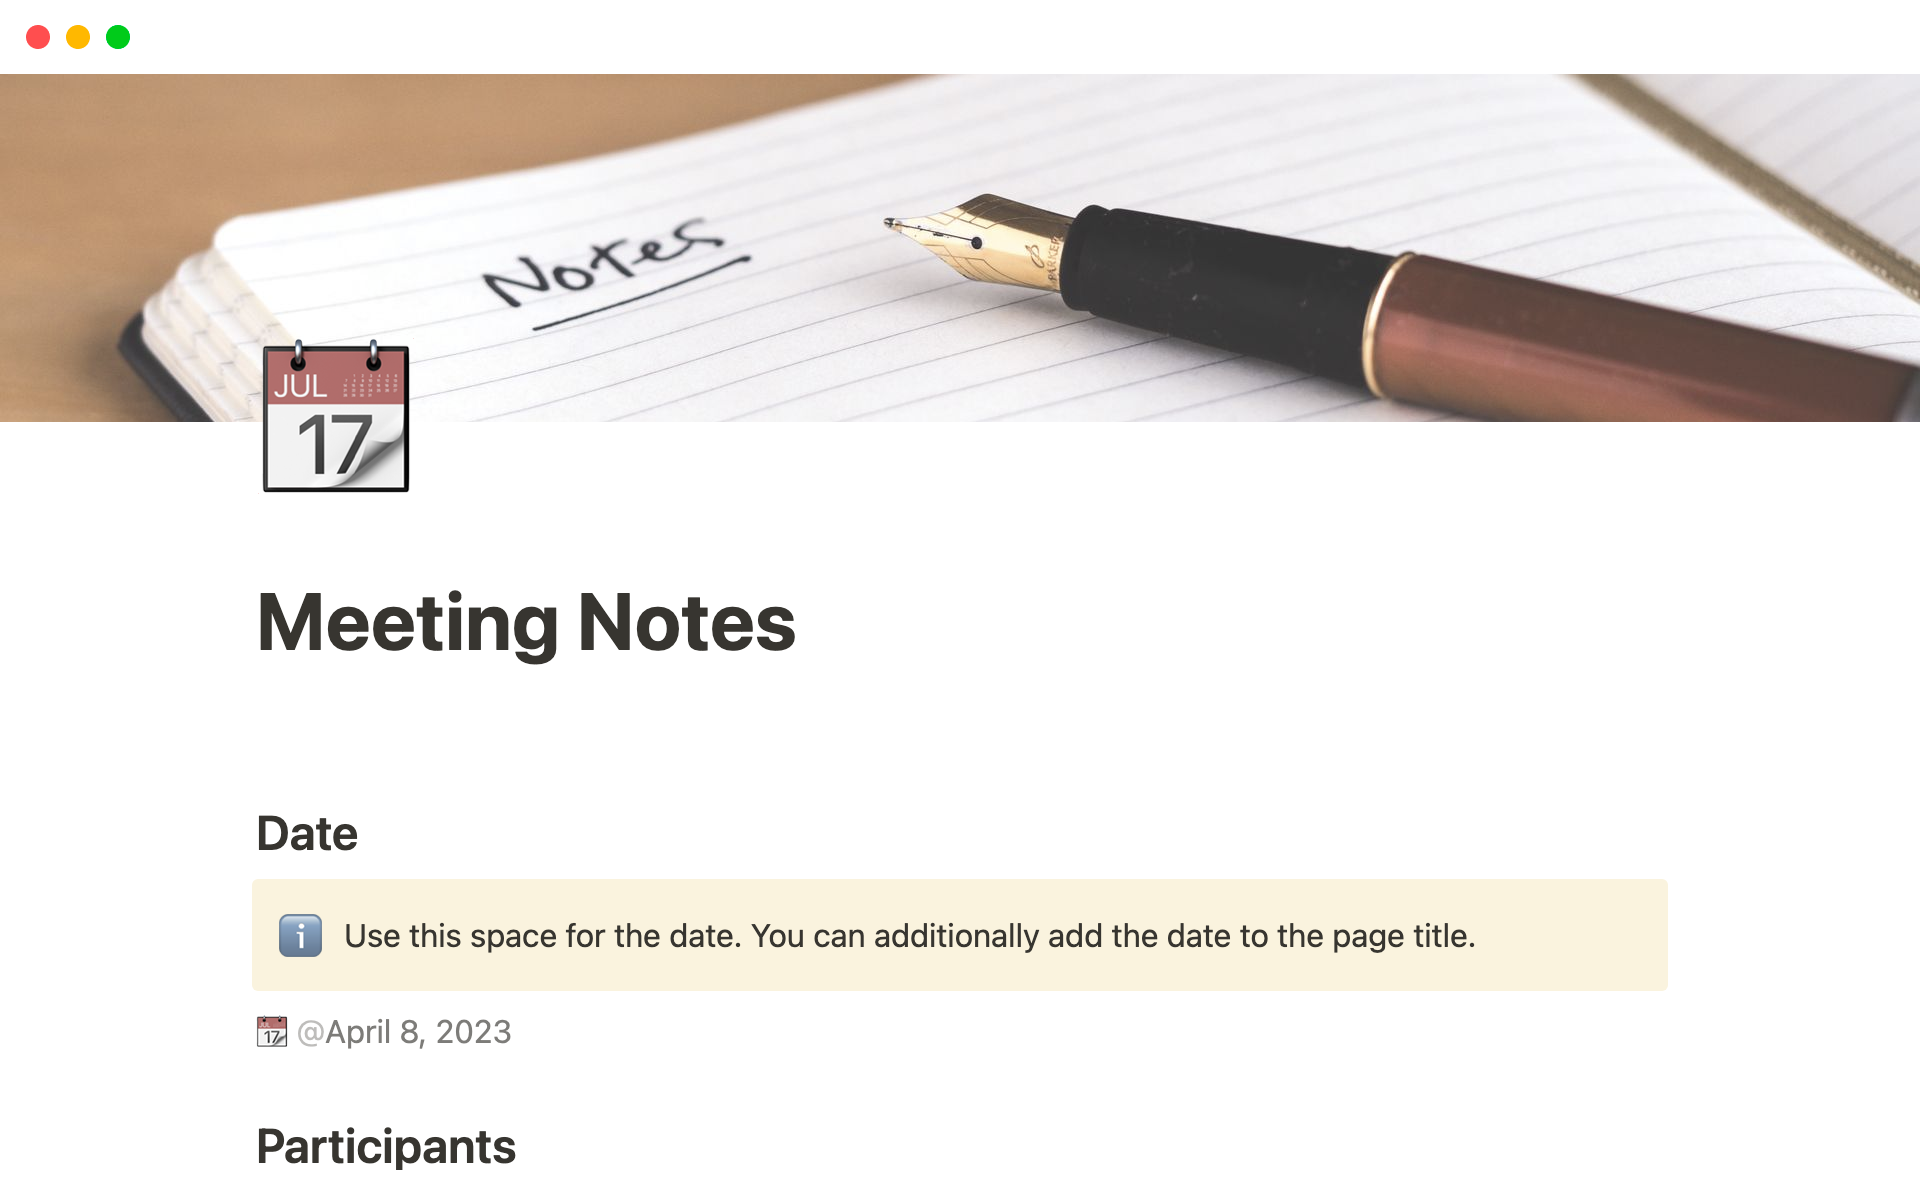 Uma prévia do modelo para Meeting Notes